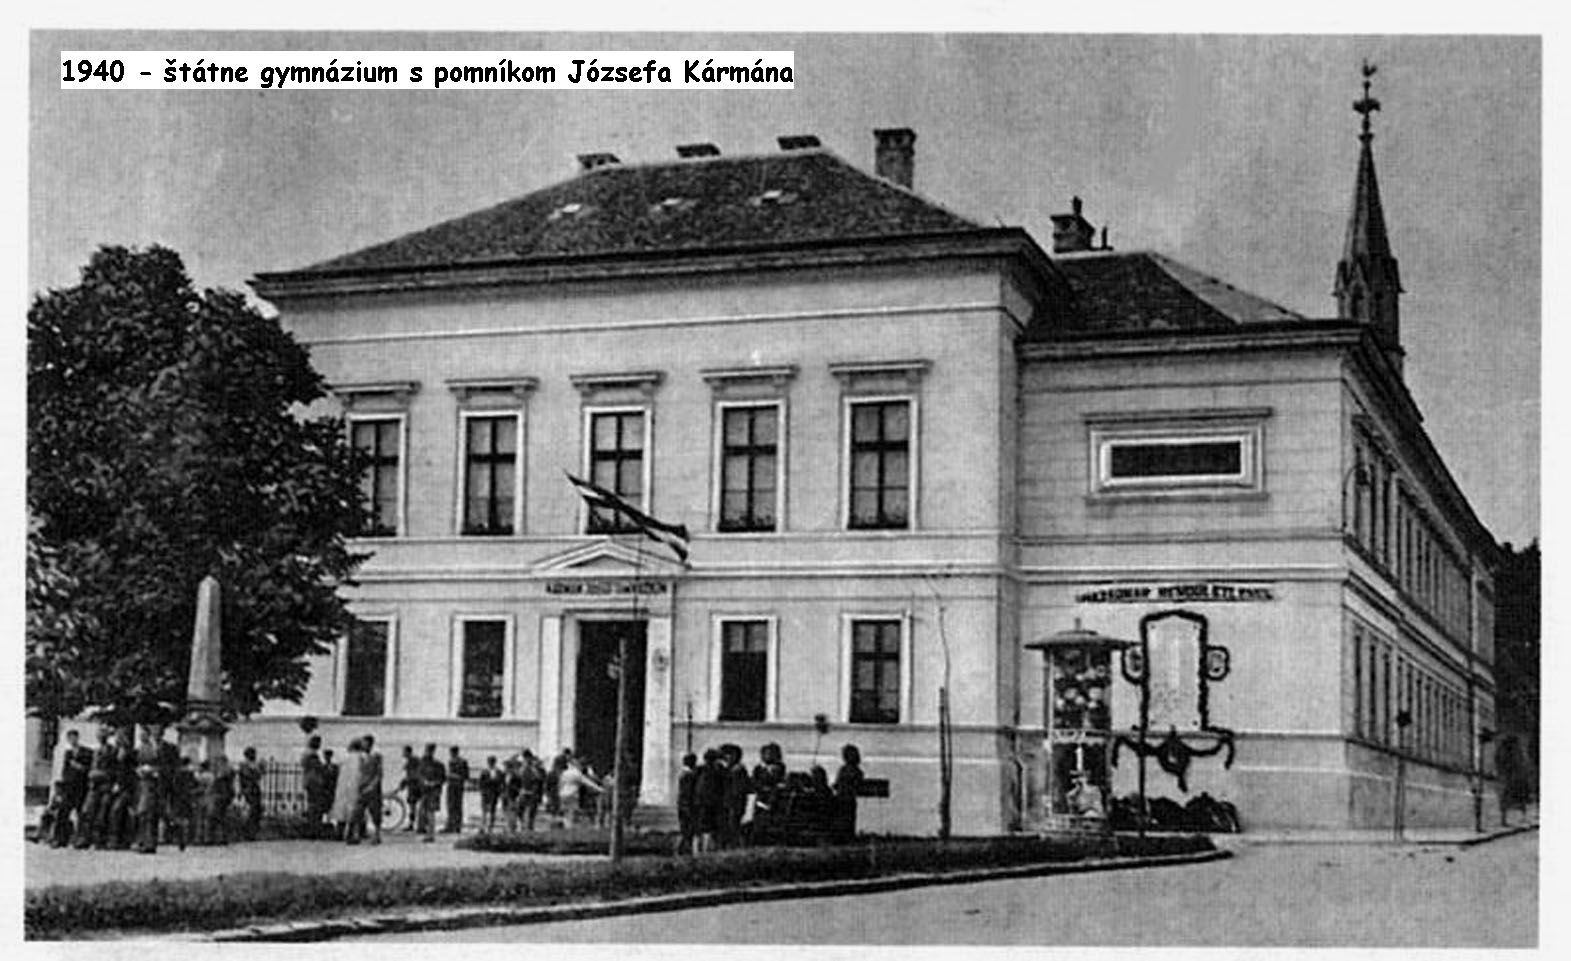 1940 - gymnázium s pomníkom spisovateľa Józsefa Kármána (pom